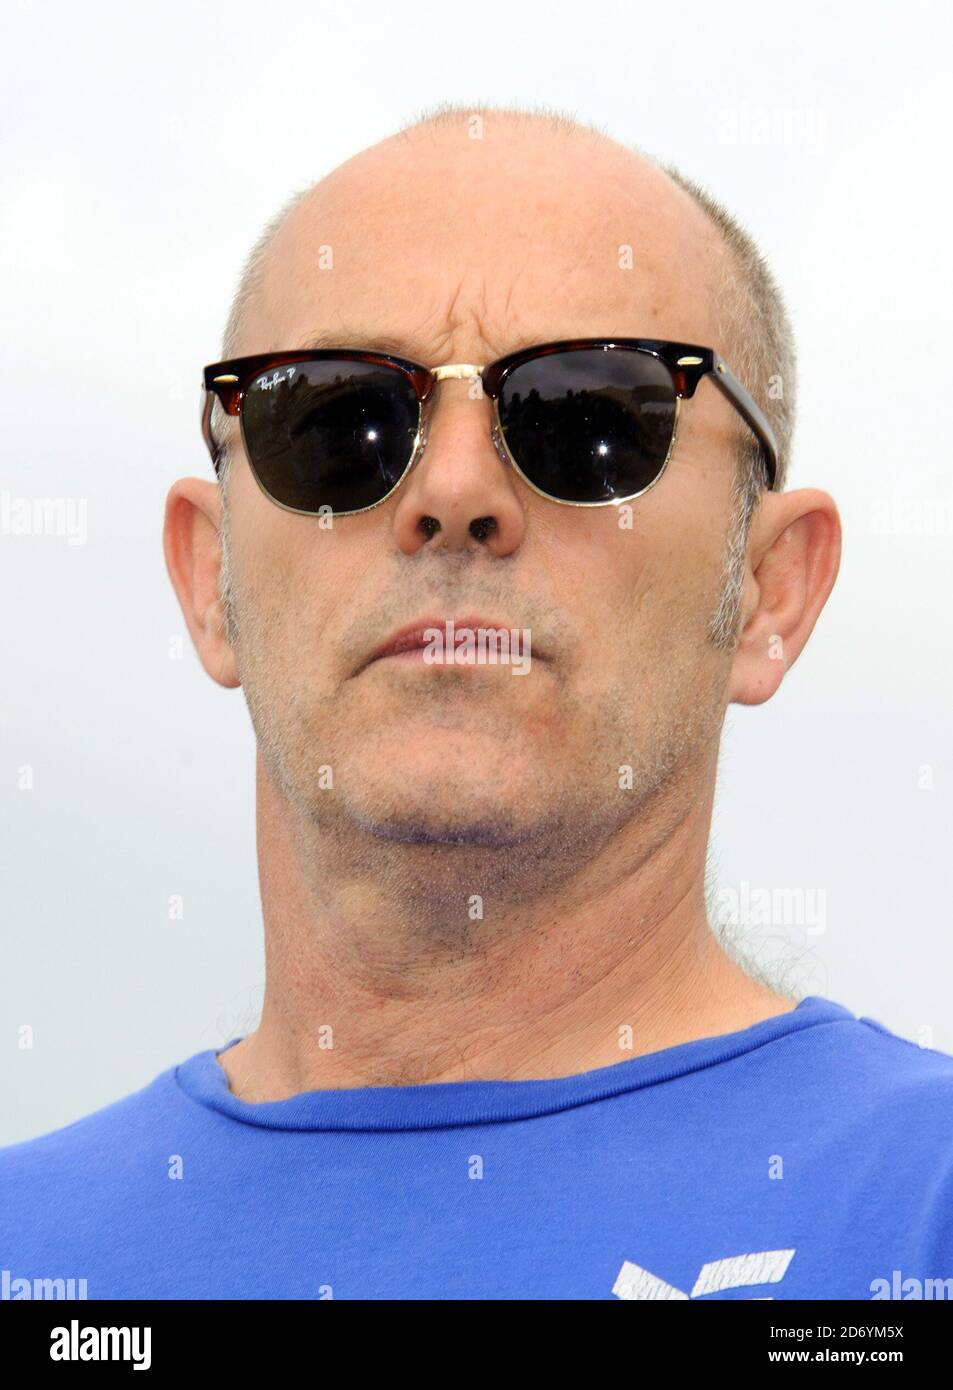 Keith Allen ha ritratto durante una fotocellula per promuovere l'uccisione illegale del film durante il 64 Festival Internazionale del Cinema di Cannes, al Carlton Hotel di Cannes, Francia. Foto Stock